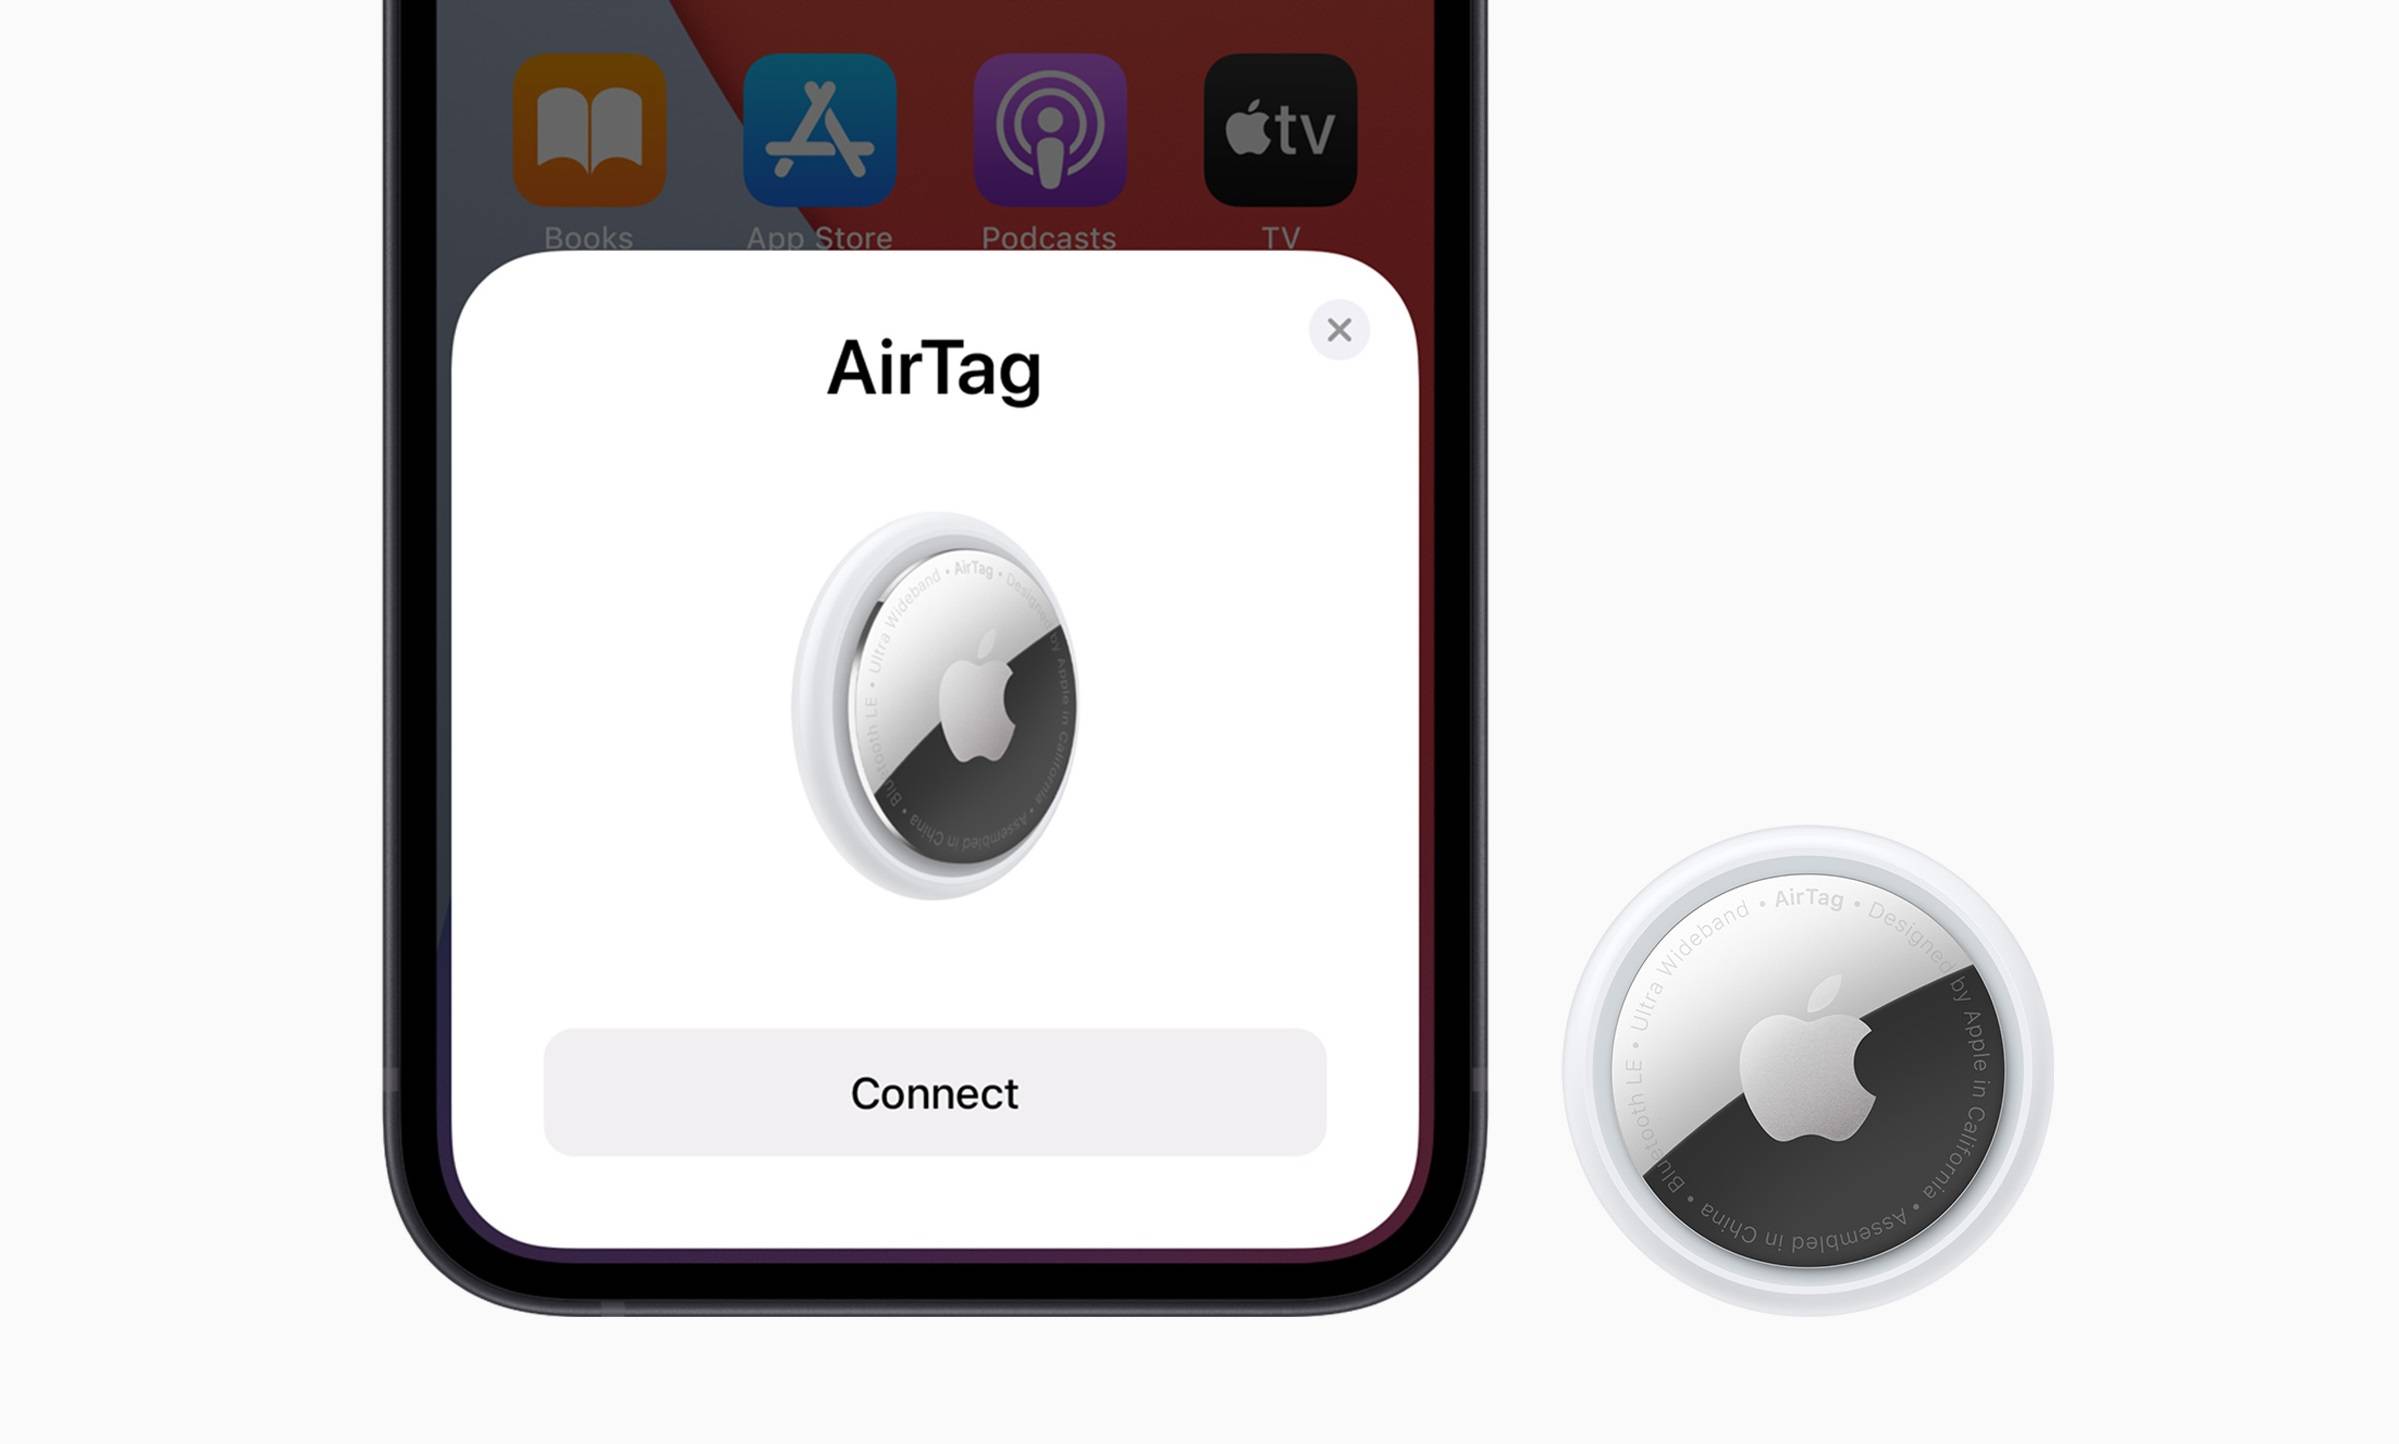 Appleпервое крупное обновление AirTag решает серьезные проблемы с конфиденциальностью